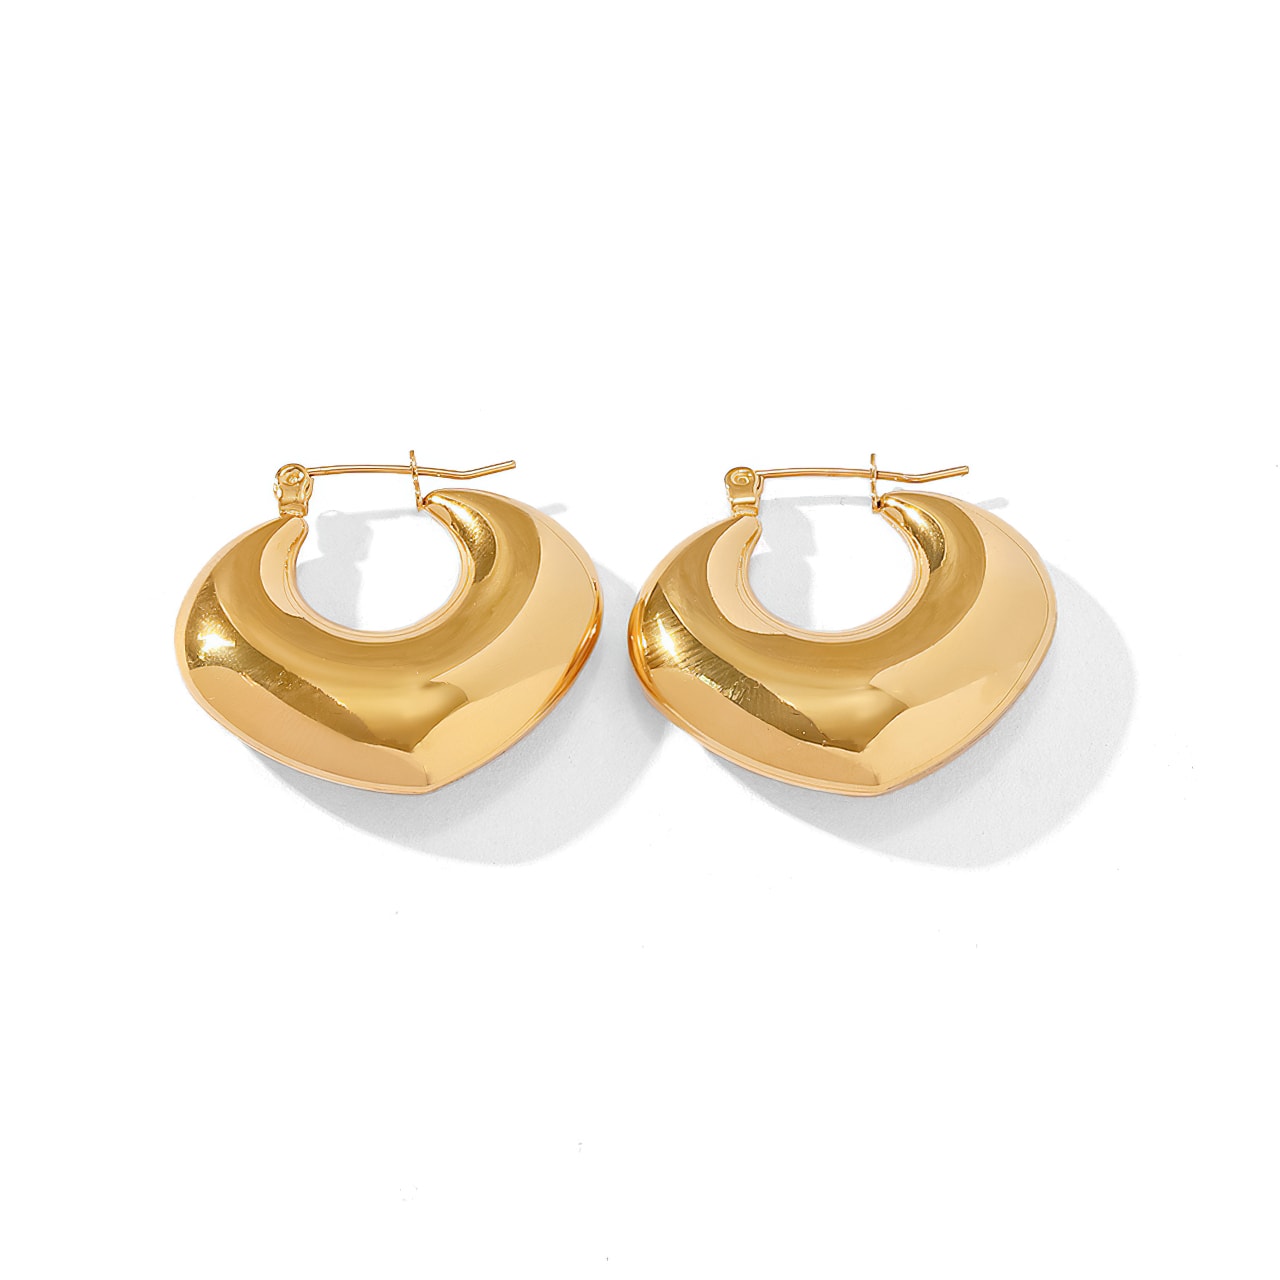 Minimalist Versatile INS Style 18k Gold-Plated Earrings - ASHLYN